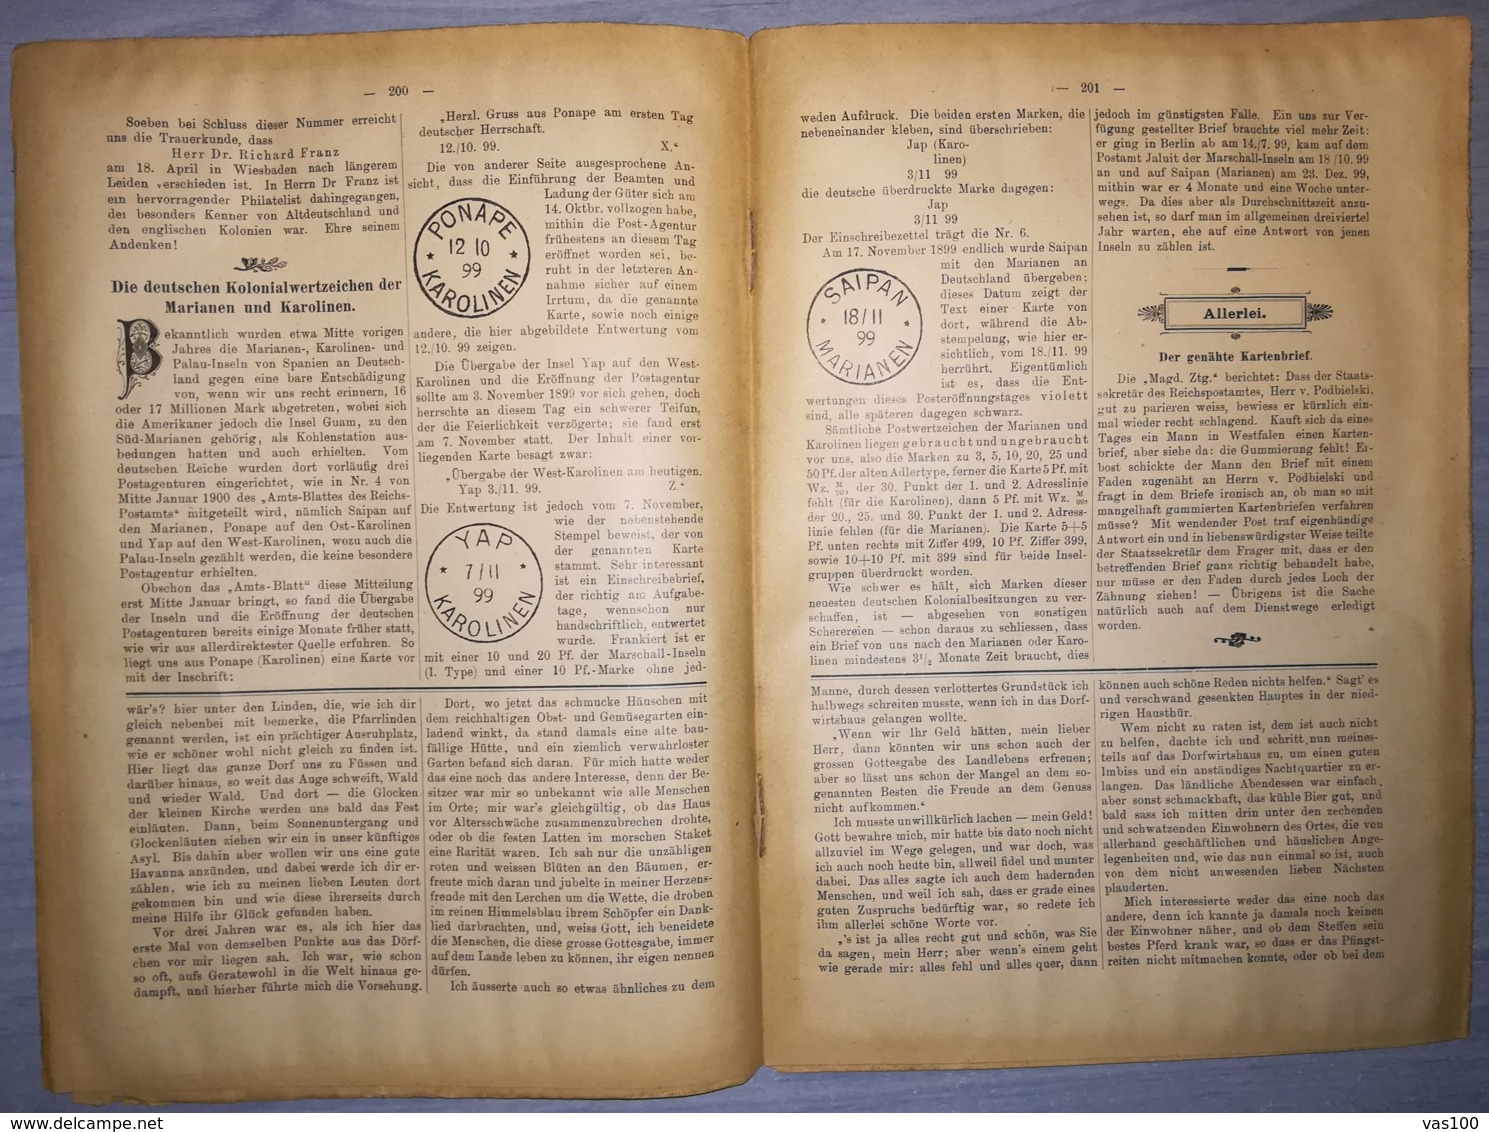 ILLUSTRATED STAMPS JOURNAL- ILLUSTRIERTES BRIEFMARKEN JOURNAL MAGAZINE, LEIPZIG, NR 9, MAY 1900, GERMANY - Deutsch (bis 1940)